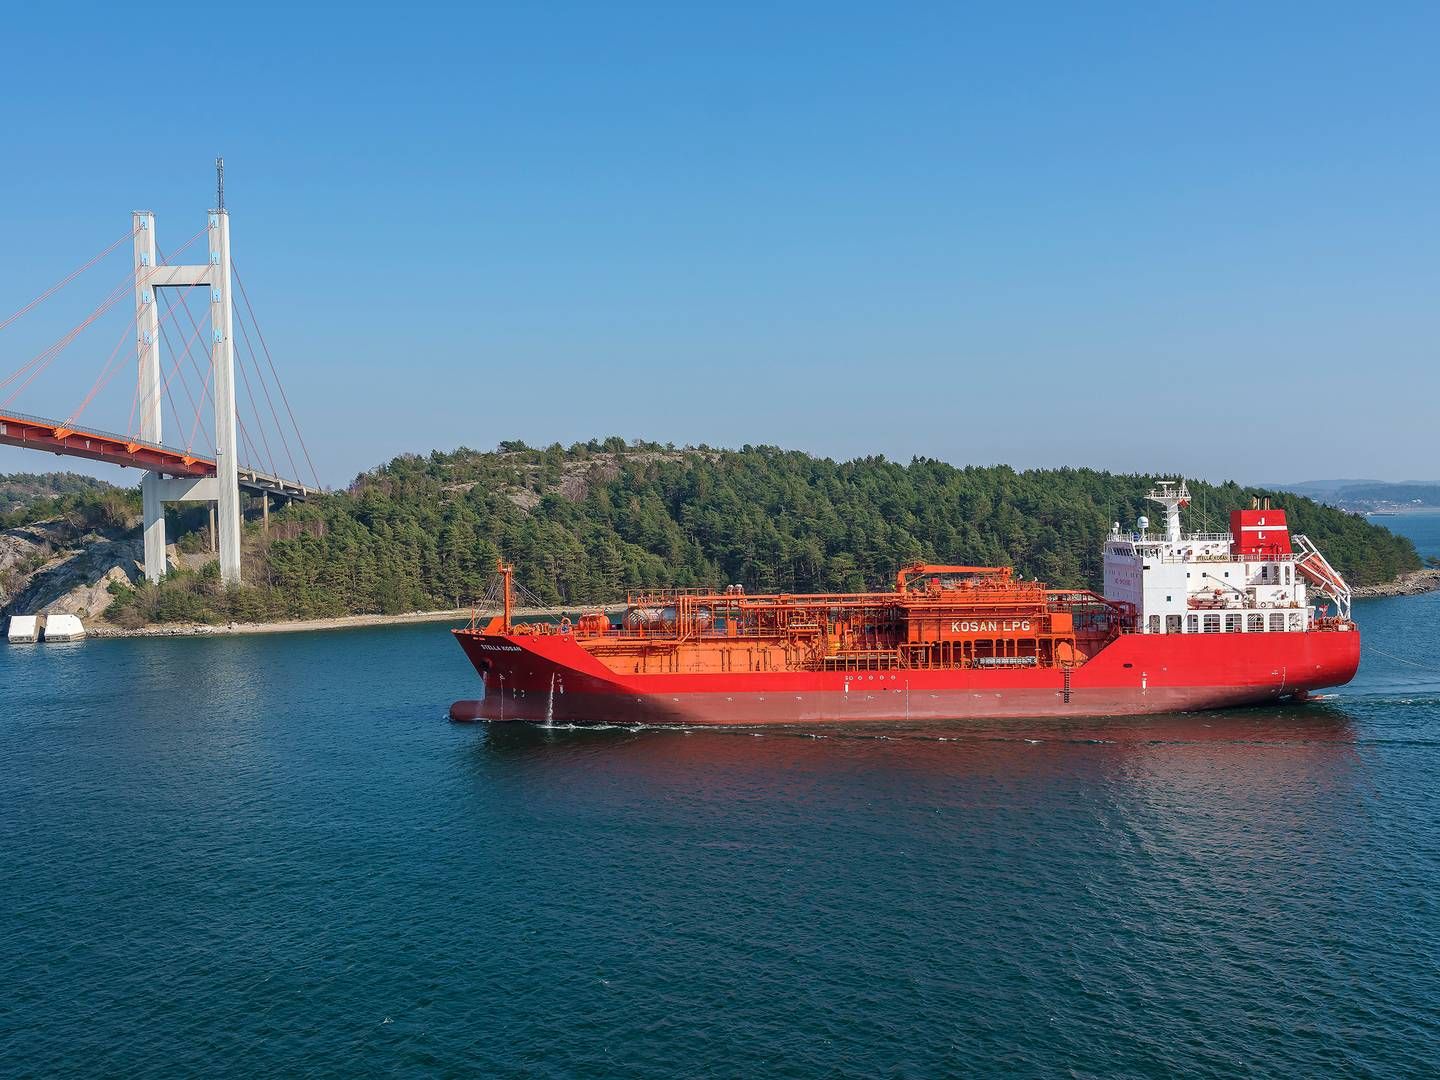 BW Epic Kosan ejer og opererer verdens største flåde af gastankskibe, der transporterer LPG, petrokemiske produkter og special-gasser. | Foto: Pr / J. Lauritzen